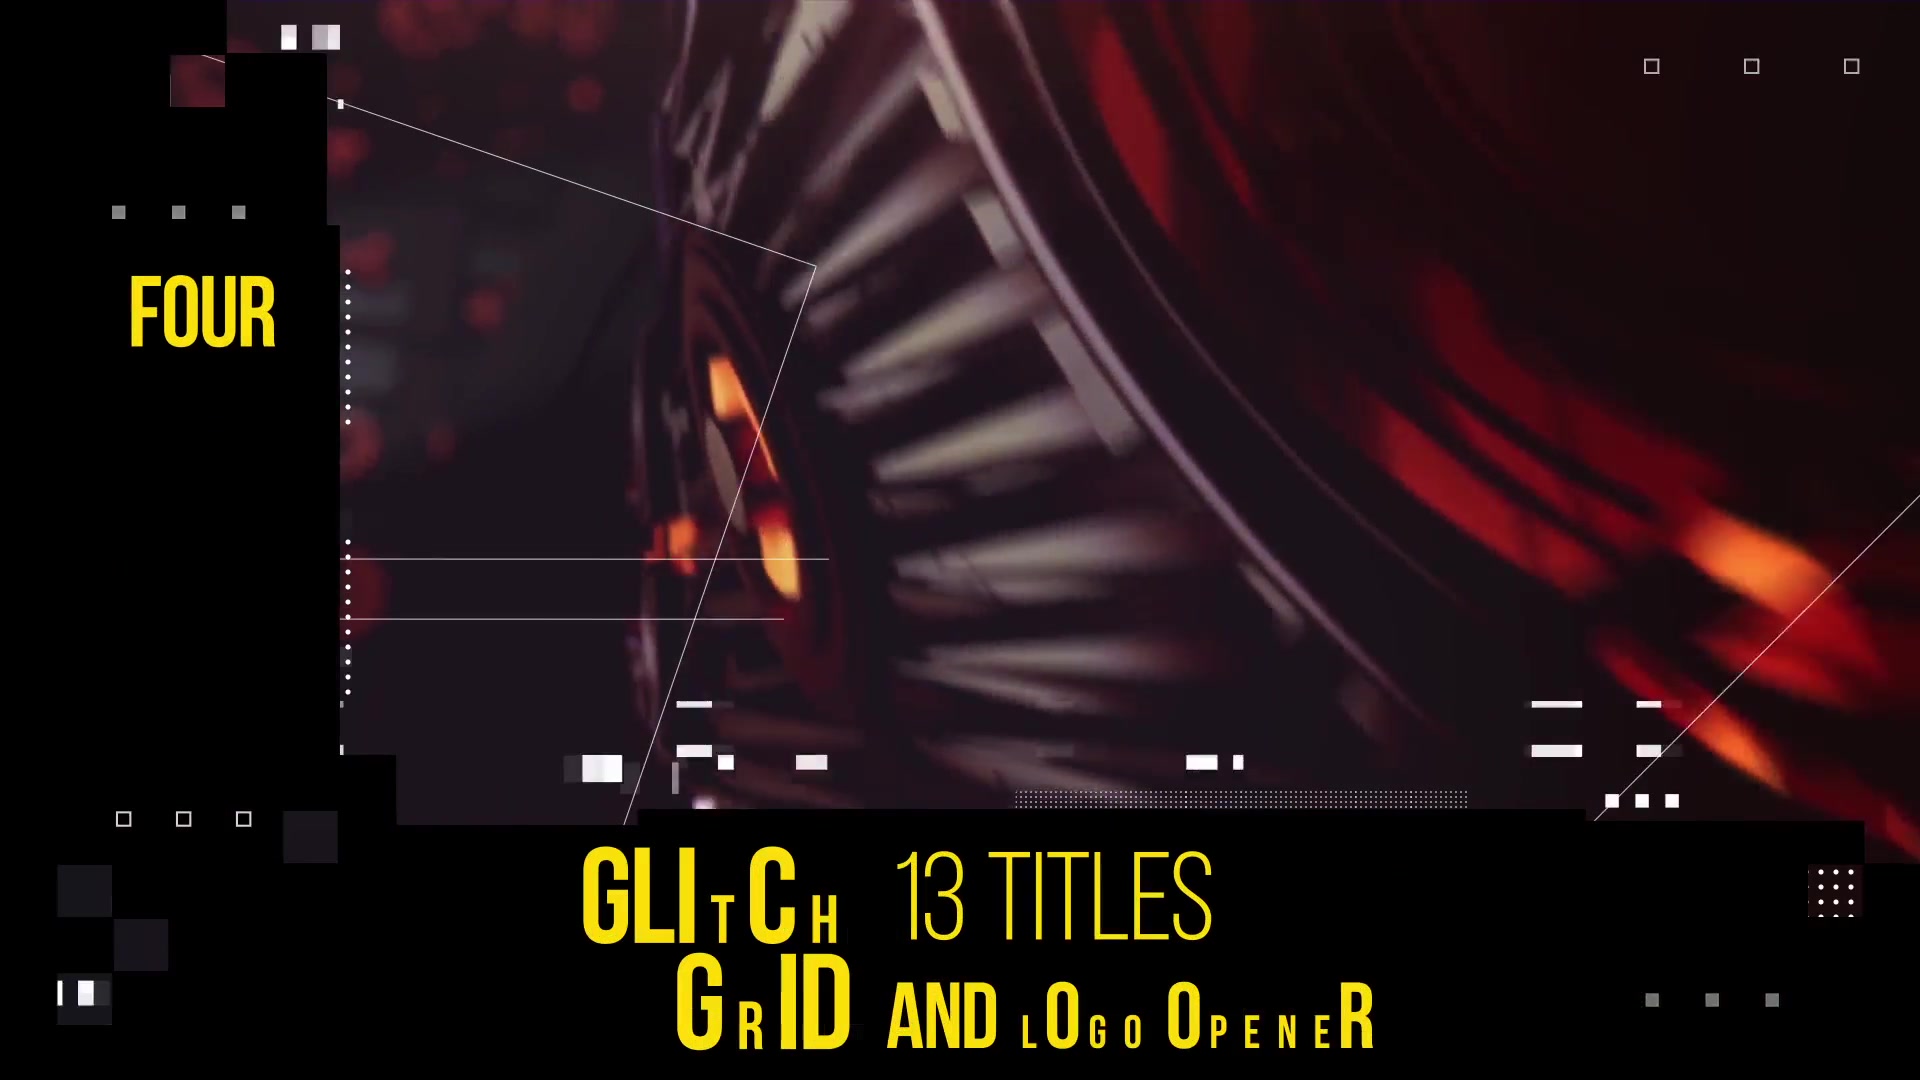 Glitch Grid Titles Videohive 23369224 Premiere Pro Image 10